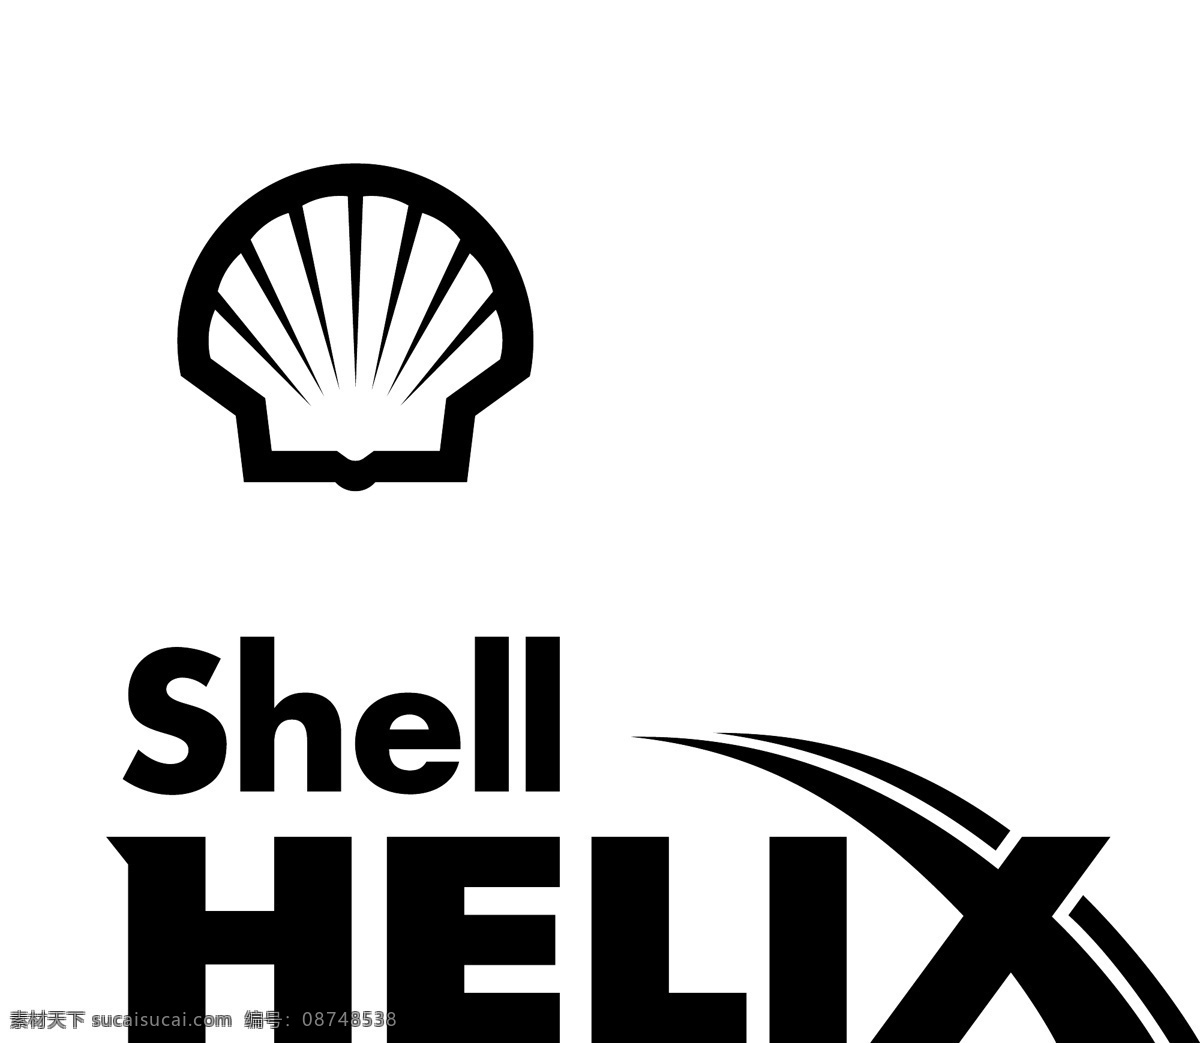 壳牌喜力石油 壳牌 喜力 石油 企业logo 公司标志 企业 logo 标志 标识标志图标 矢量